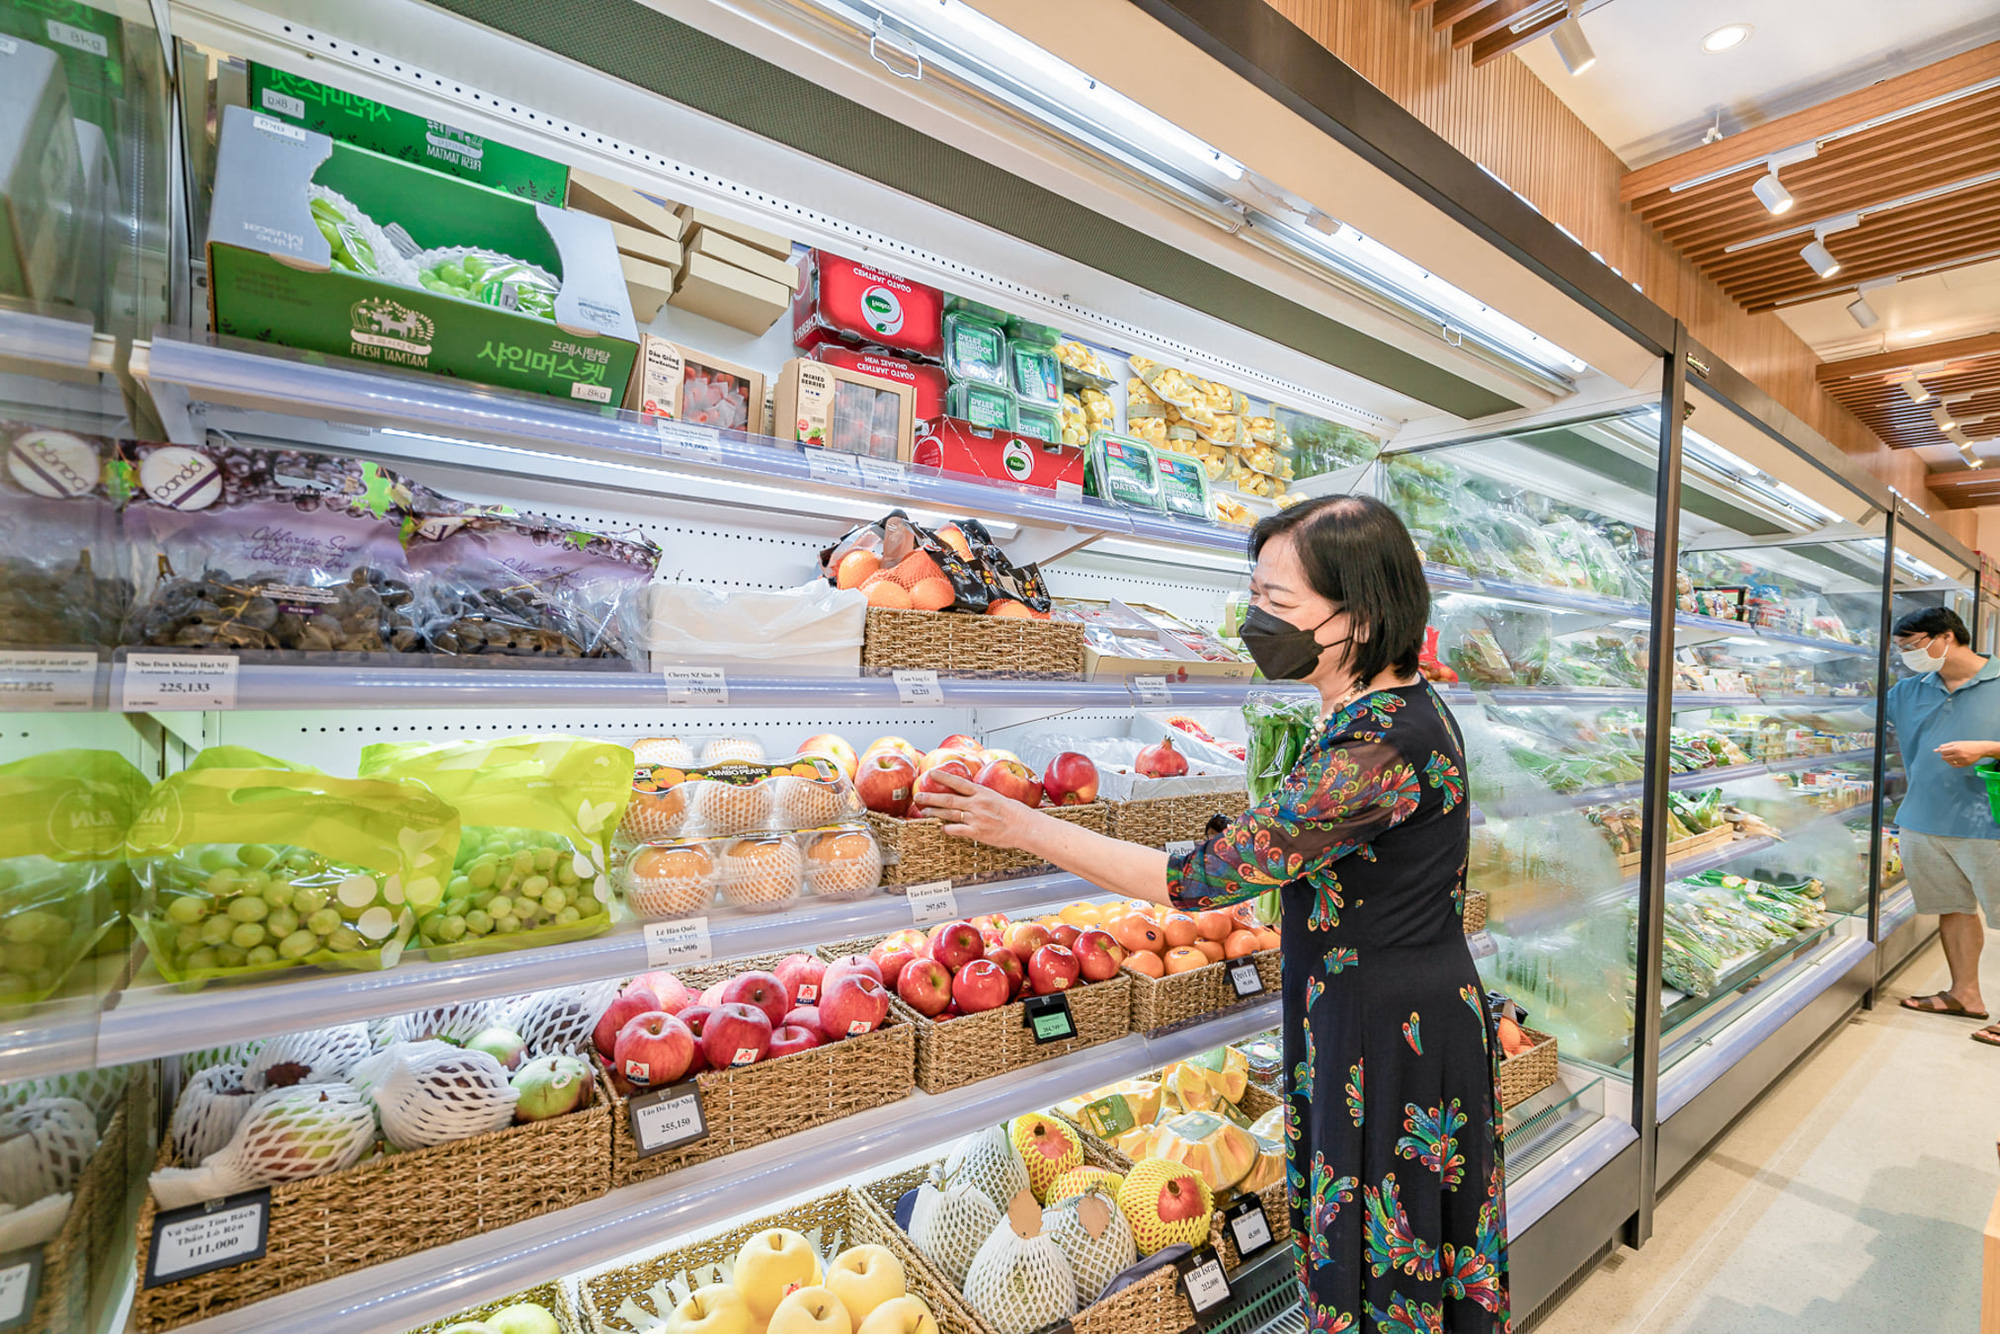 Ra mắt chuỗi siêu thị Roots, thêm một lựa chọn thực phẩm sạch cho người Sài Gòn - Ảnh 2.